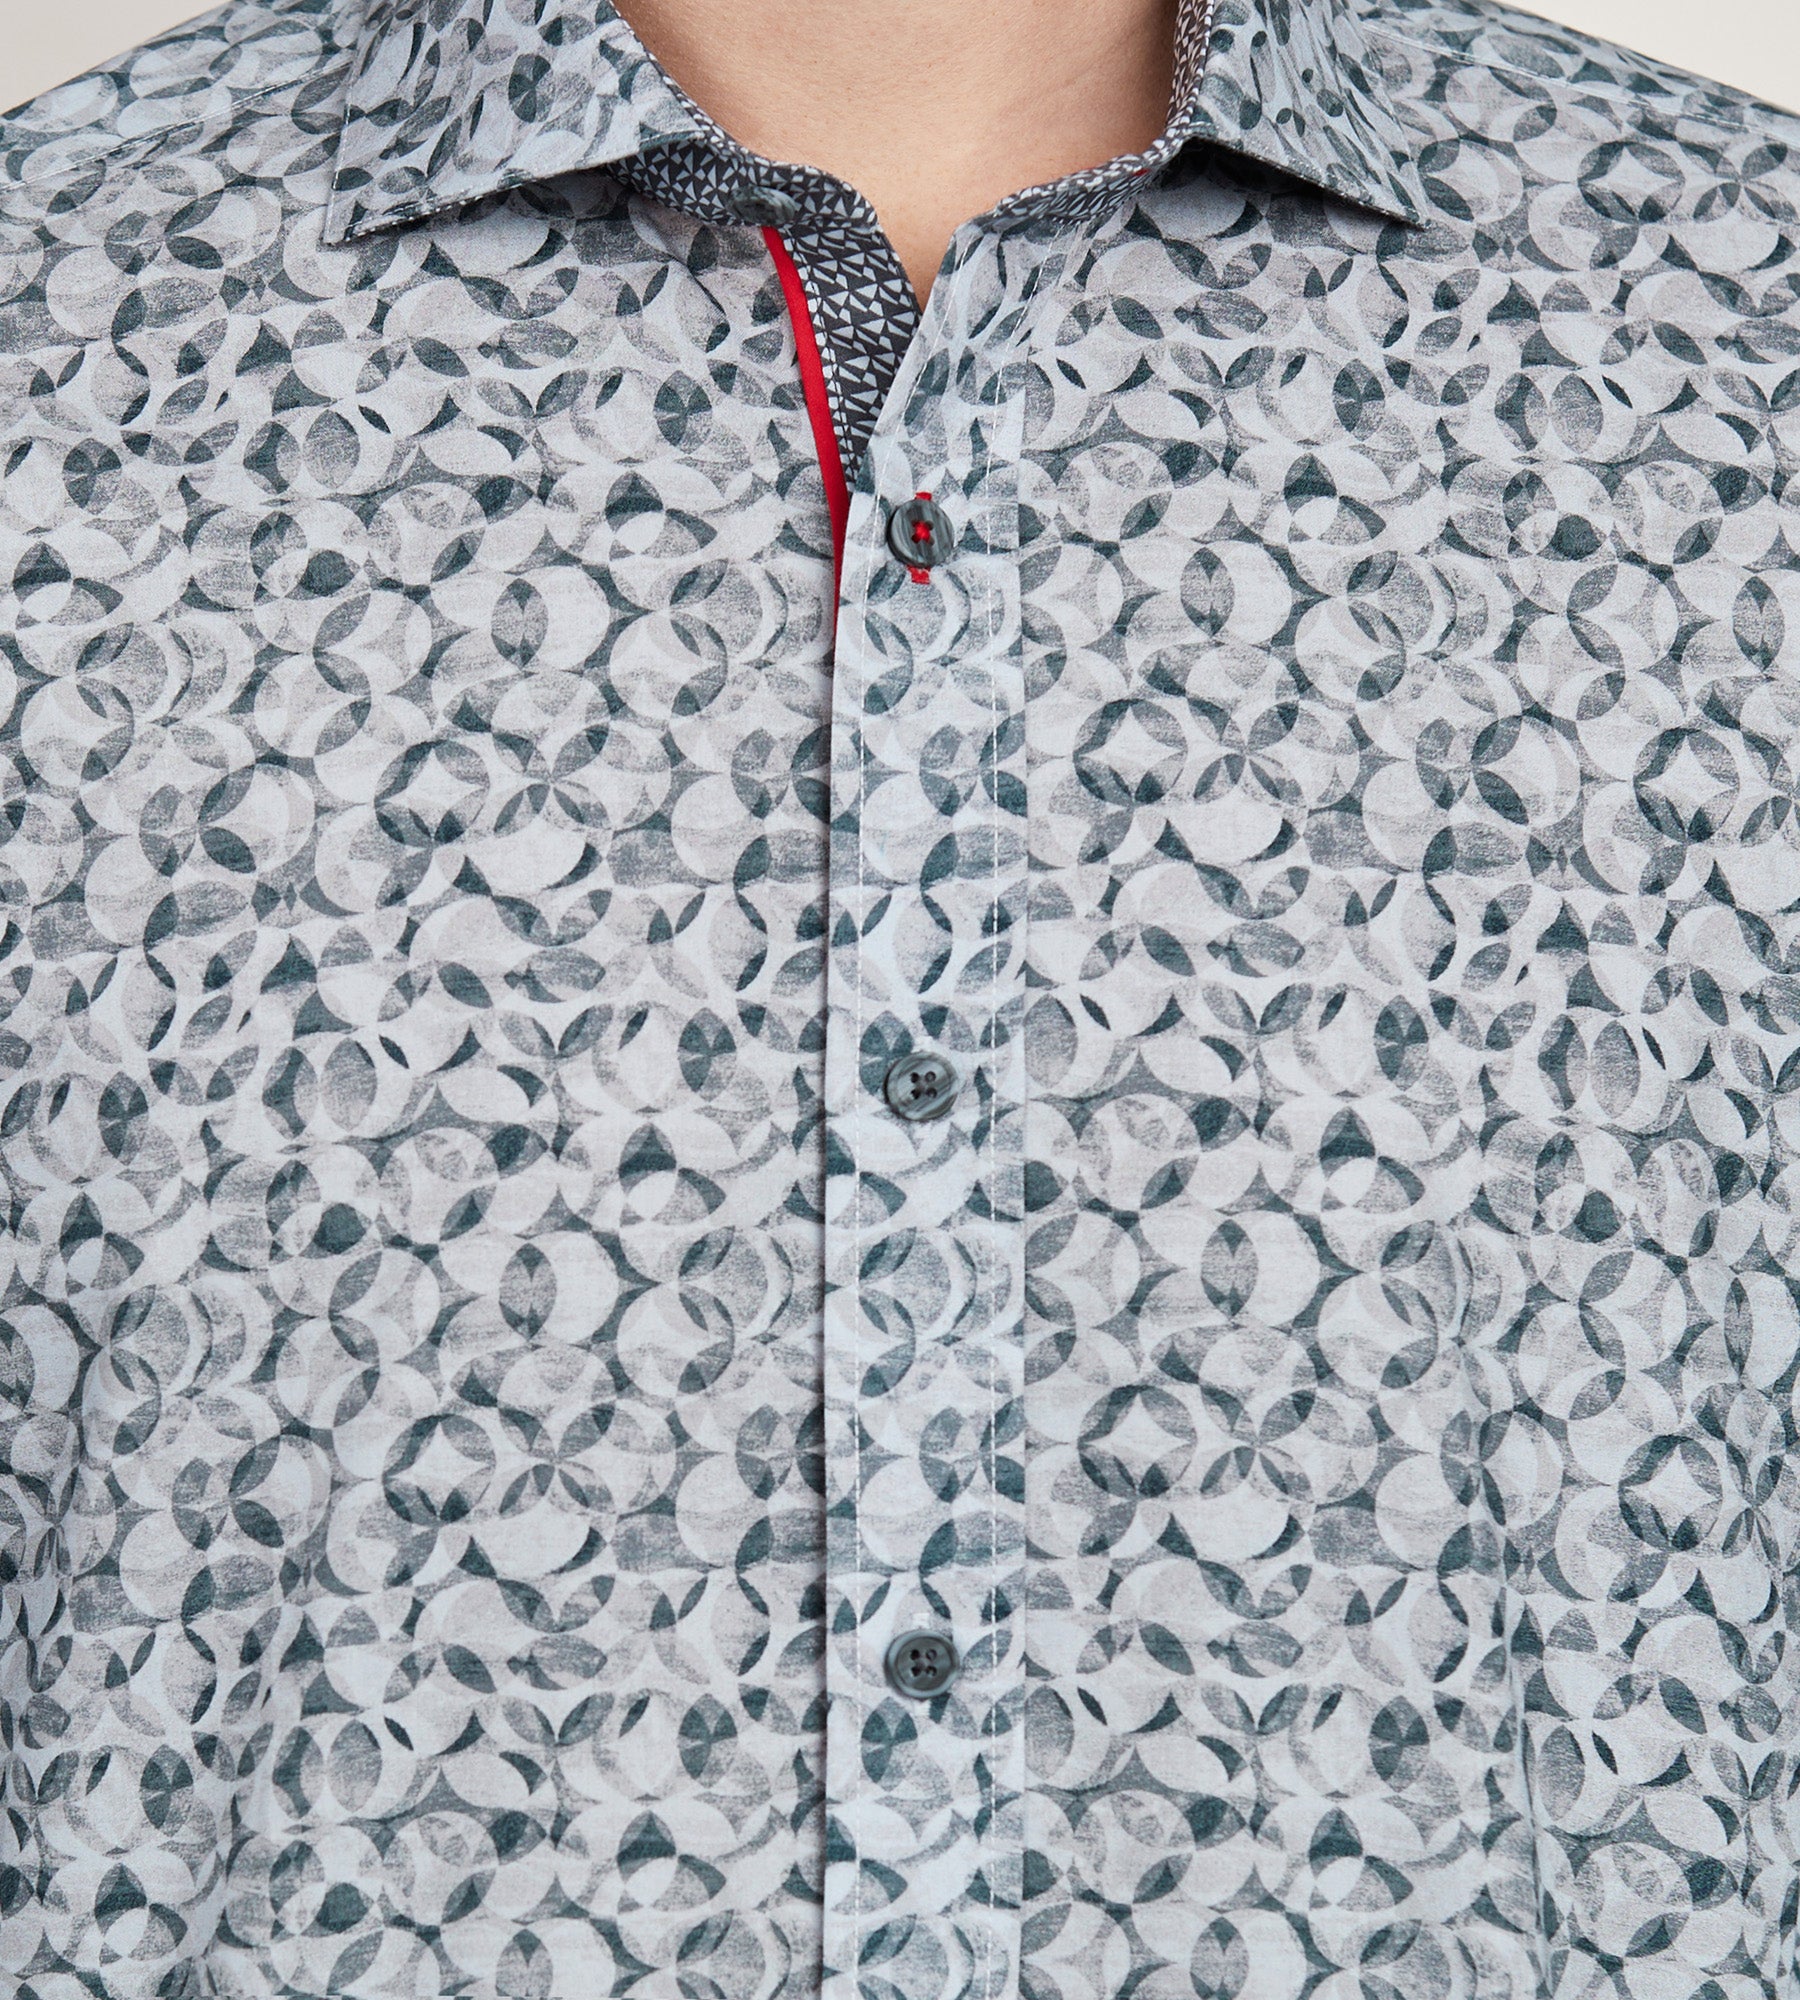 Modern Fit Long Sleeve Double Collar Textured Sport Shirt – Tip Top